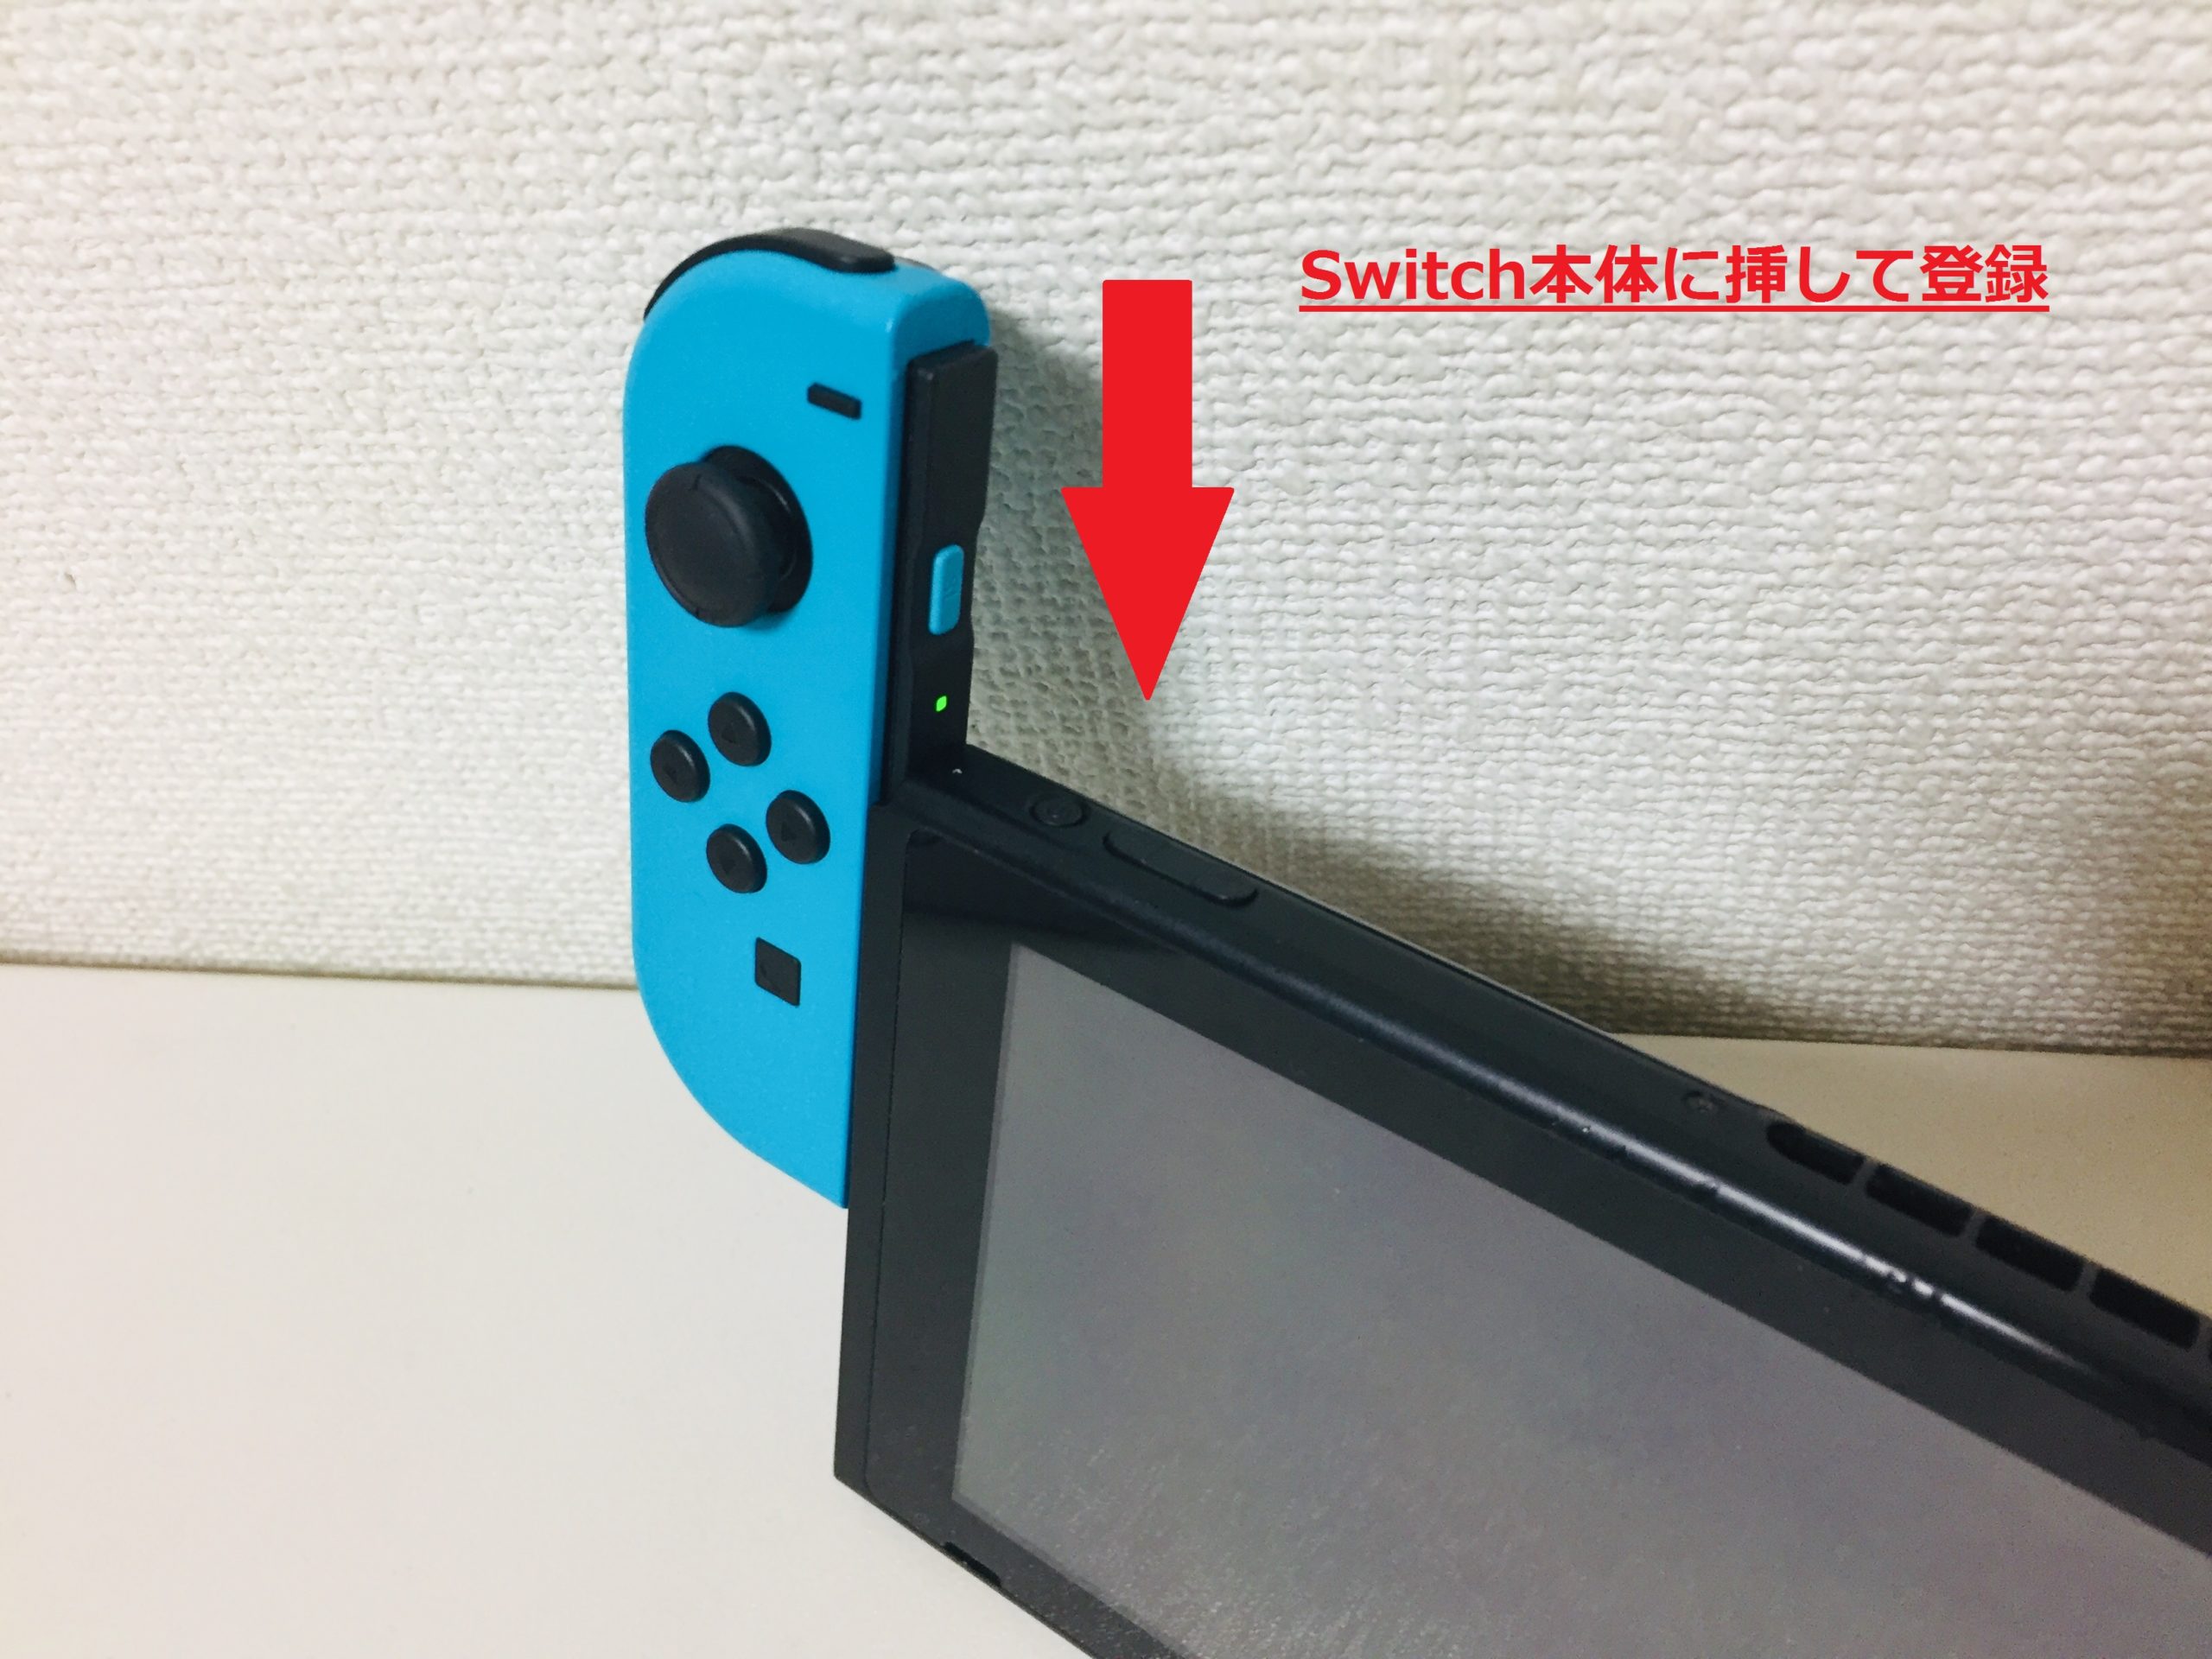 本店激安 Nintendo switch スイッチ 本体とジョイコン 家庭用ゲーム本体